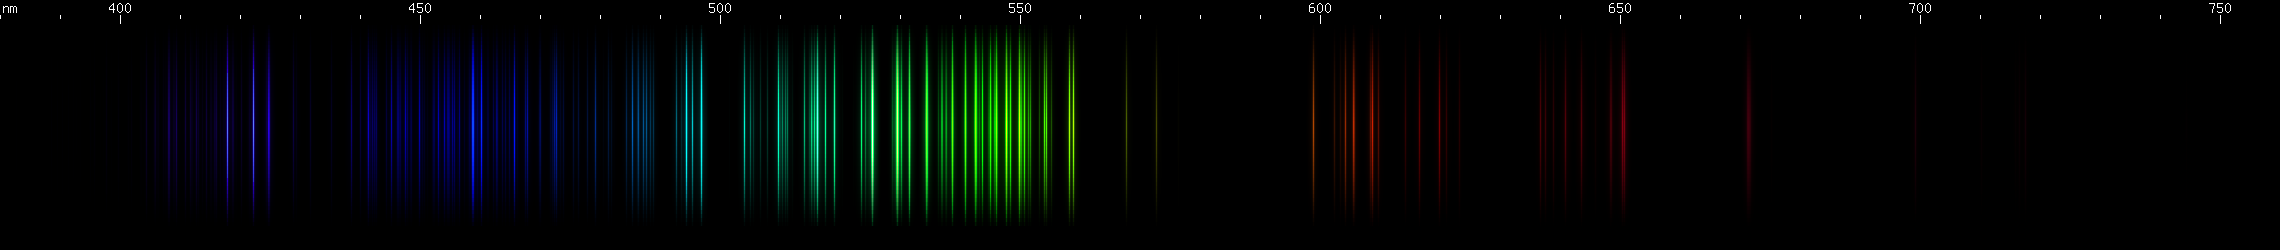 Spectral lines of Phosphorus.